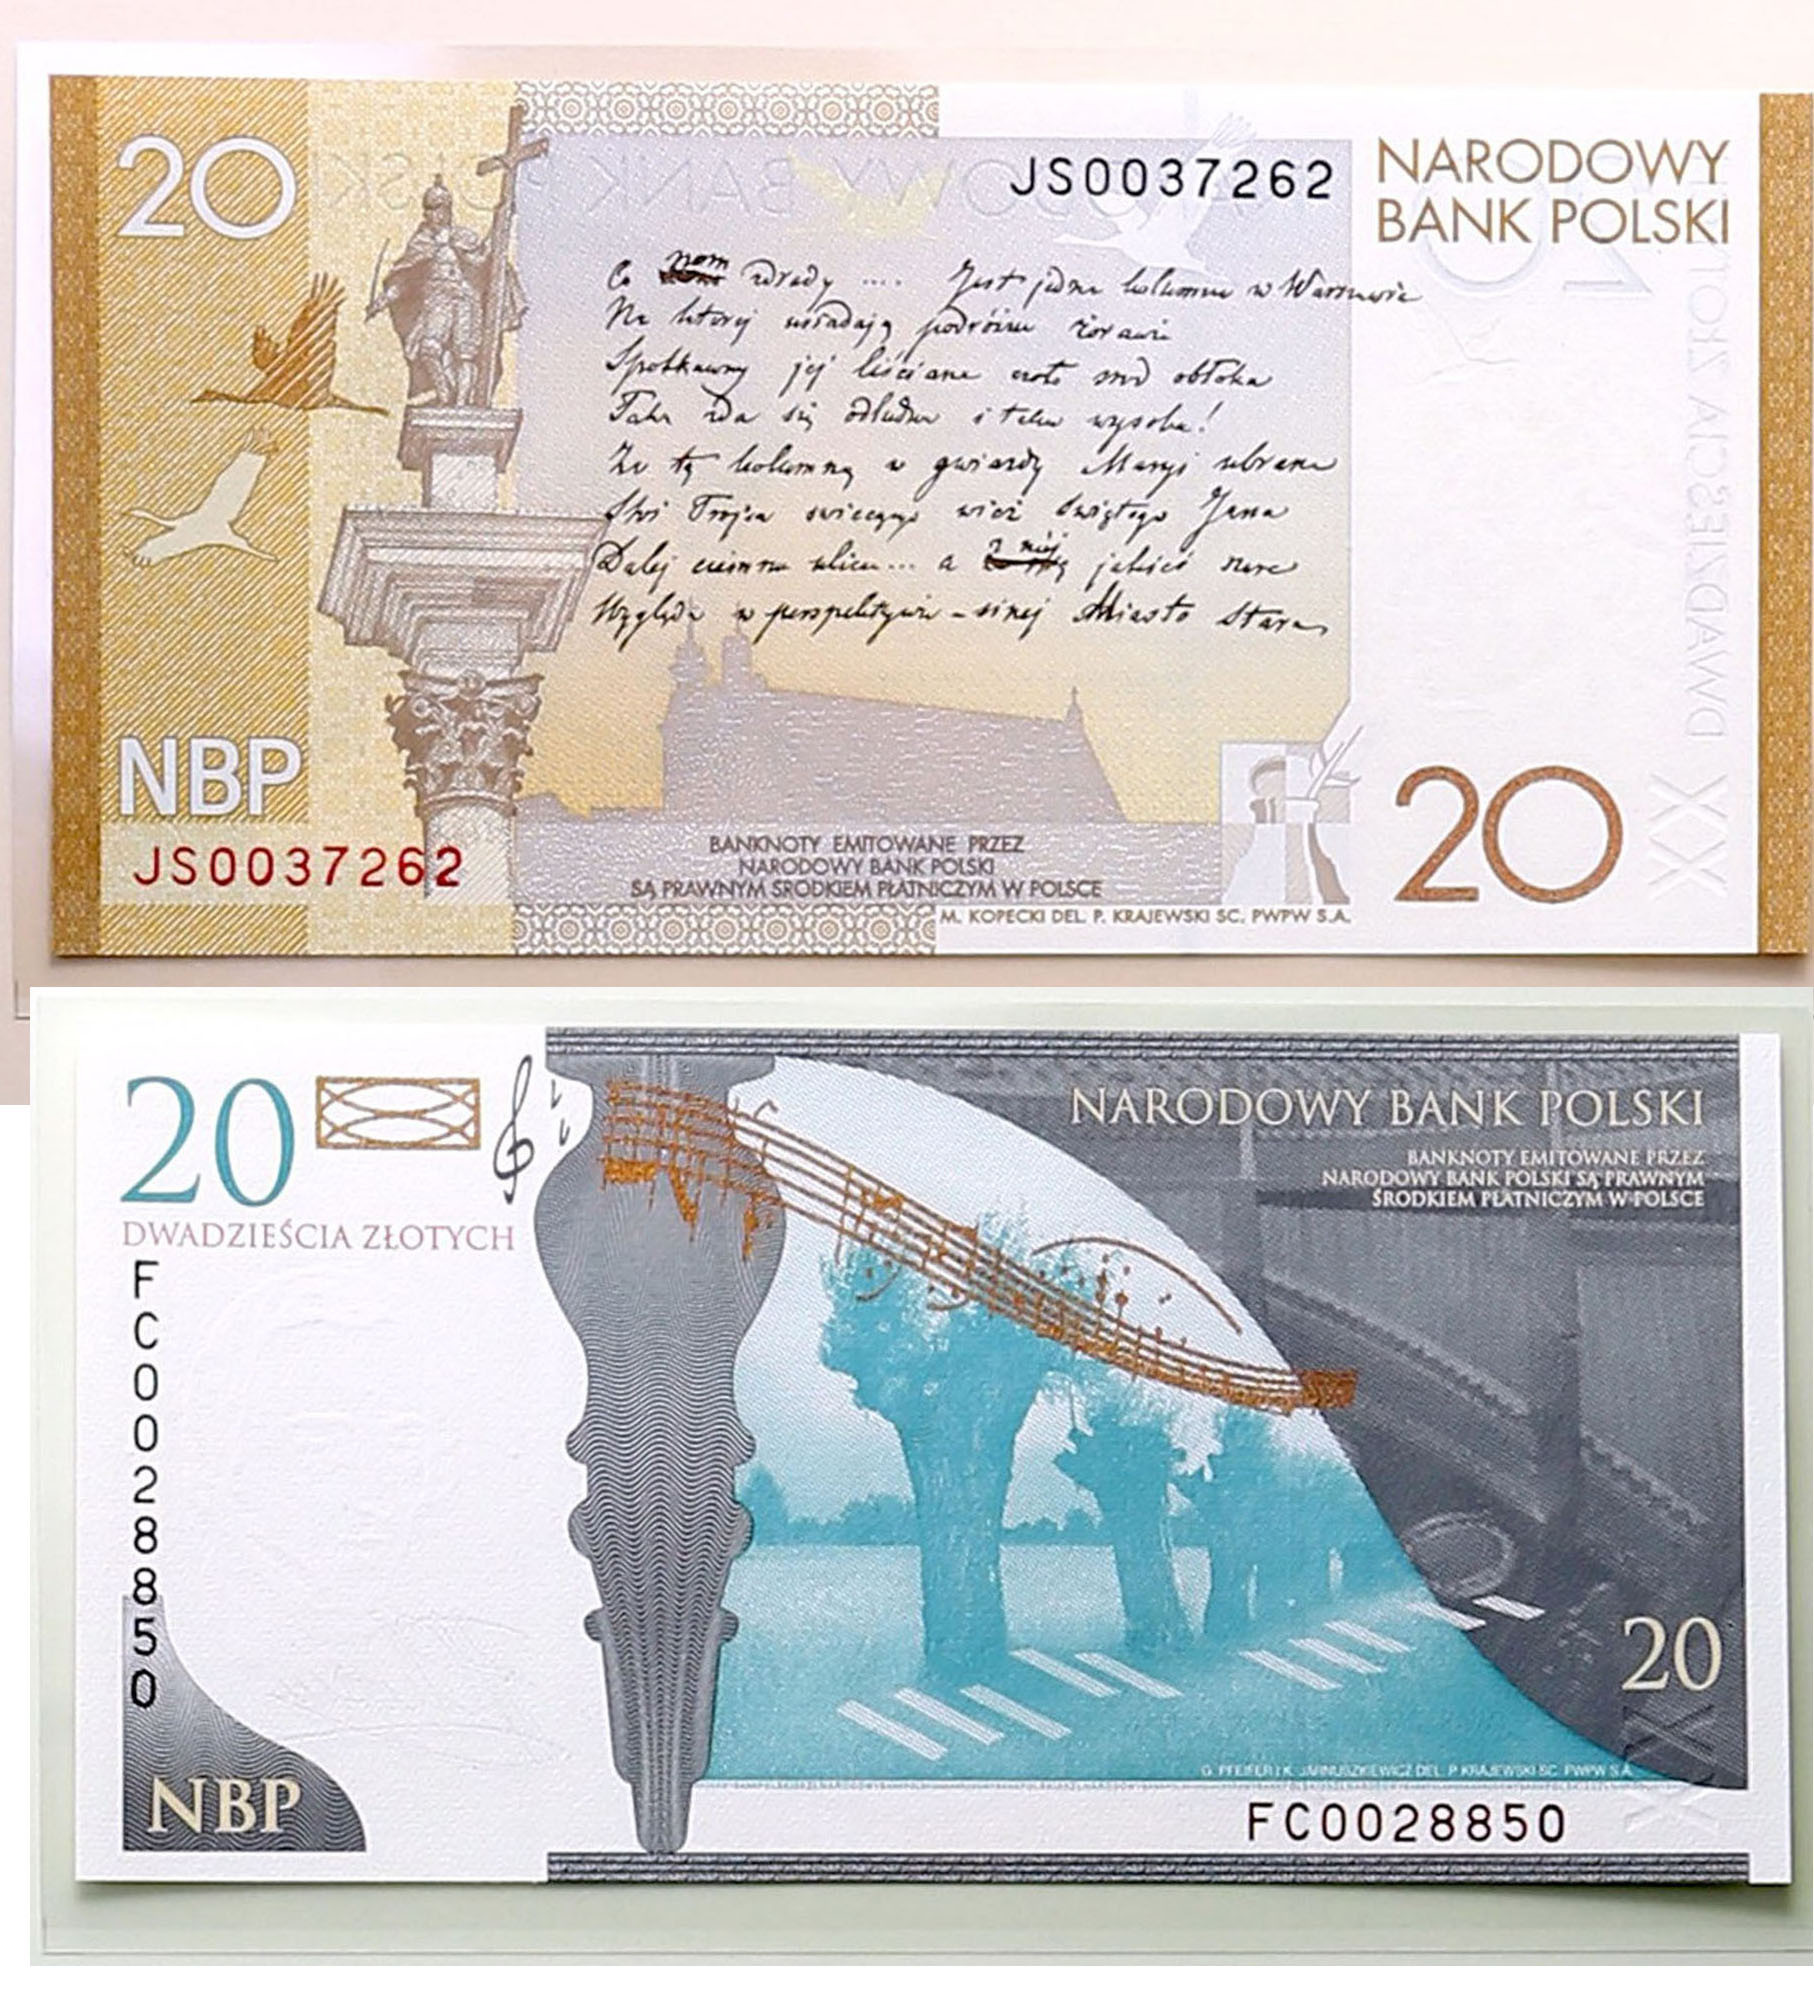 Banknoty 20 złotych 2009 Słowacki, 20 złotych Chopin 2009, zestaw 2 sztuk